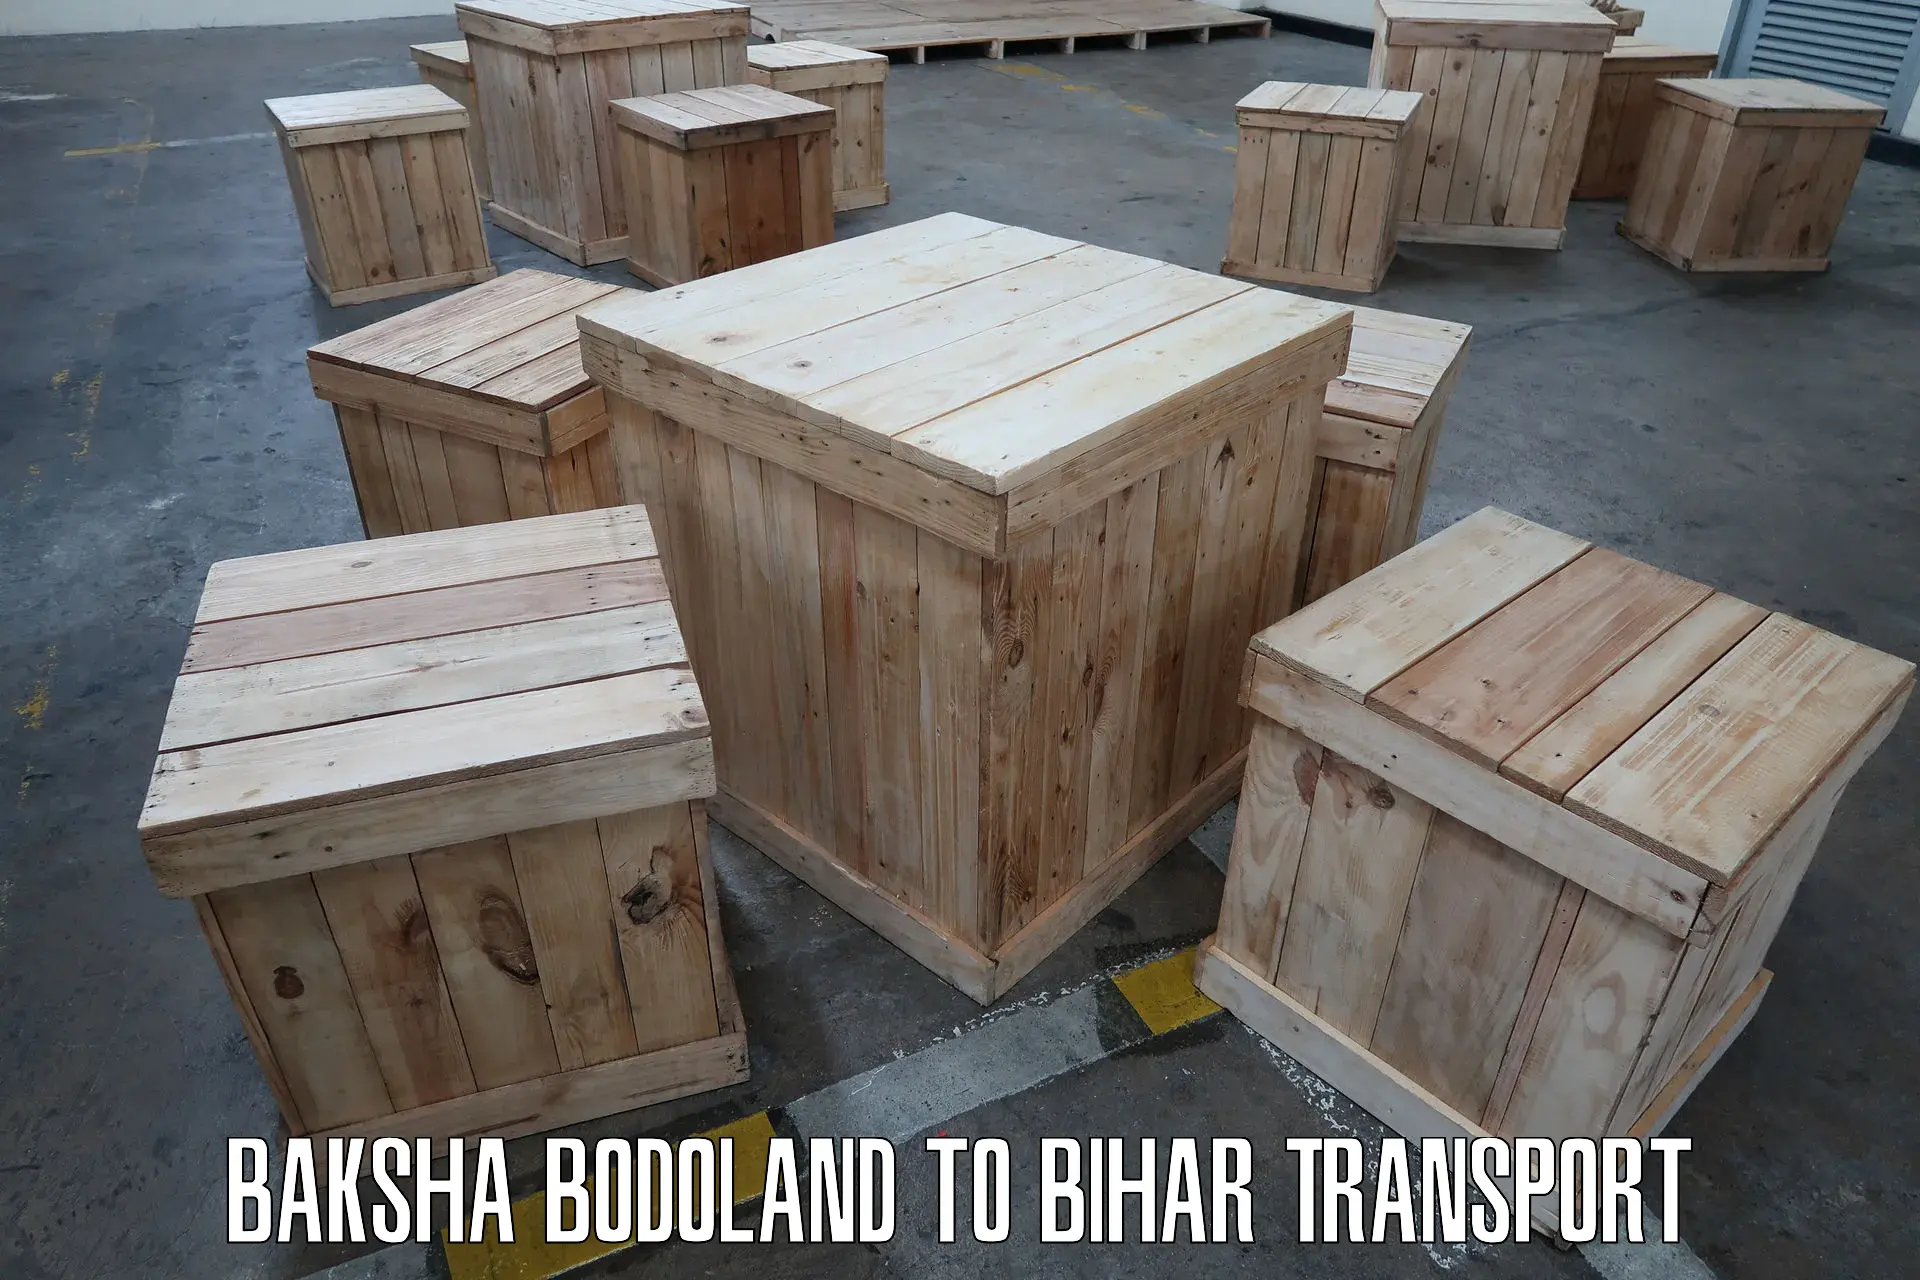 Furniture transport service Baksha Bodoland to Rajgir